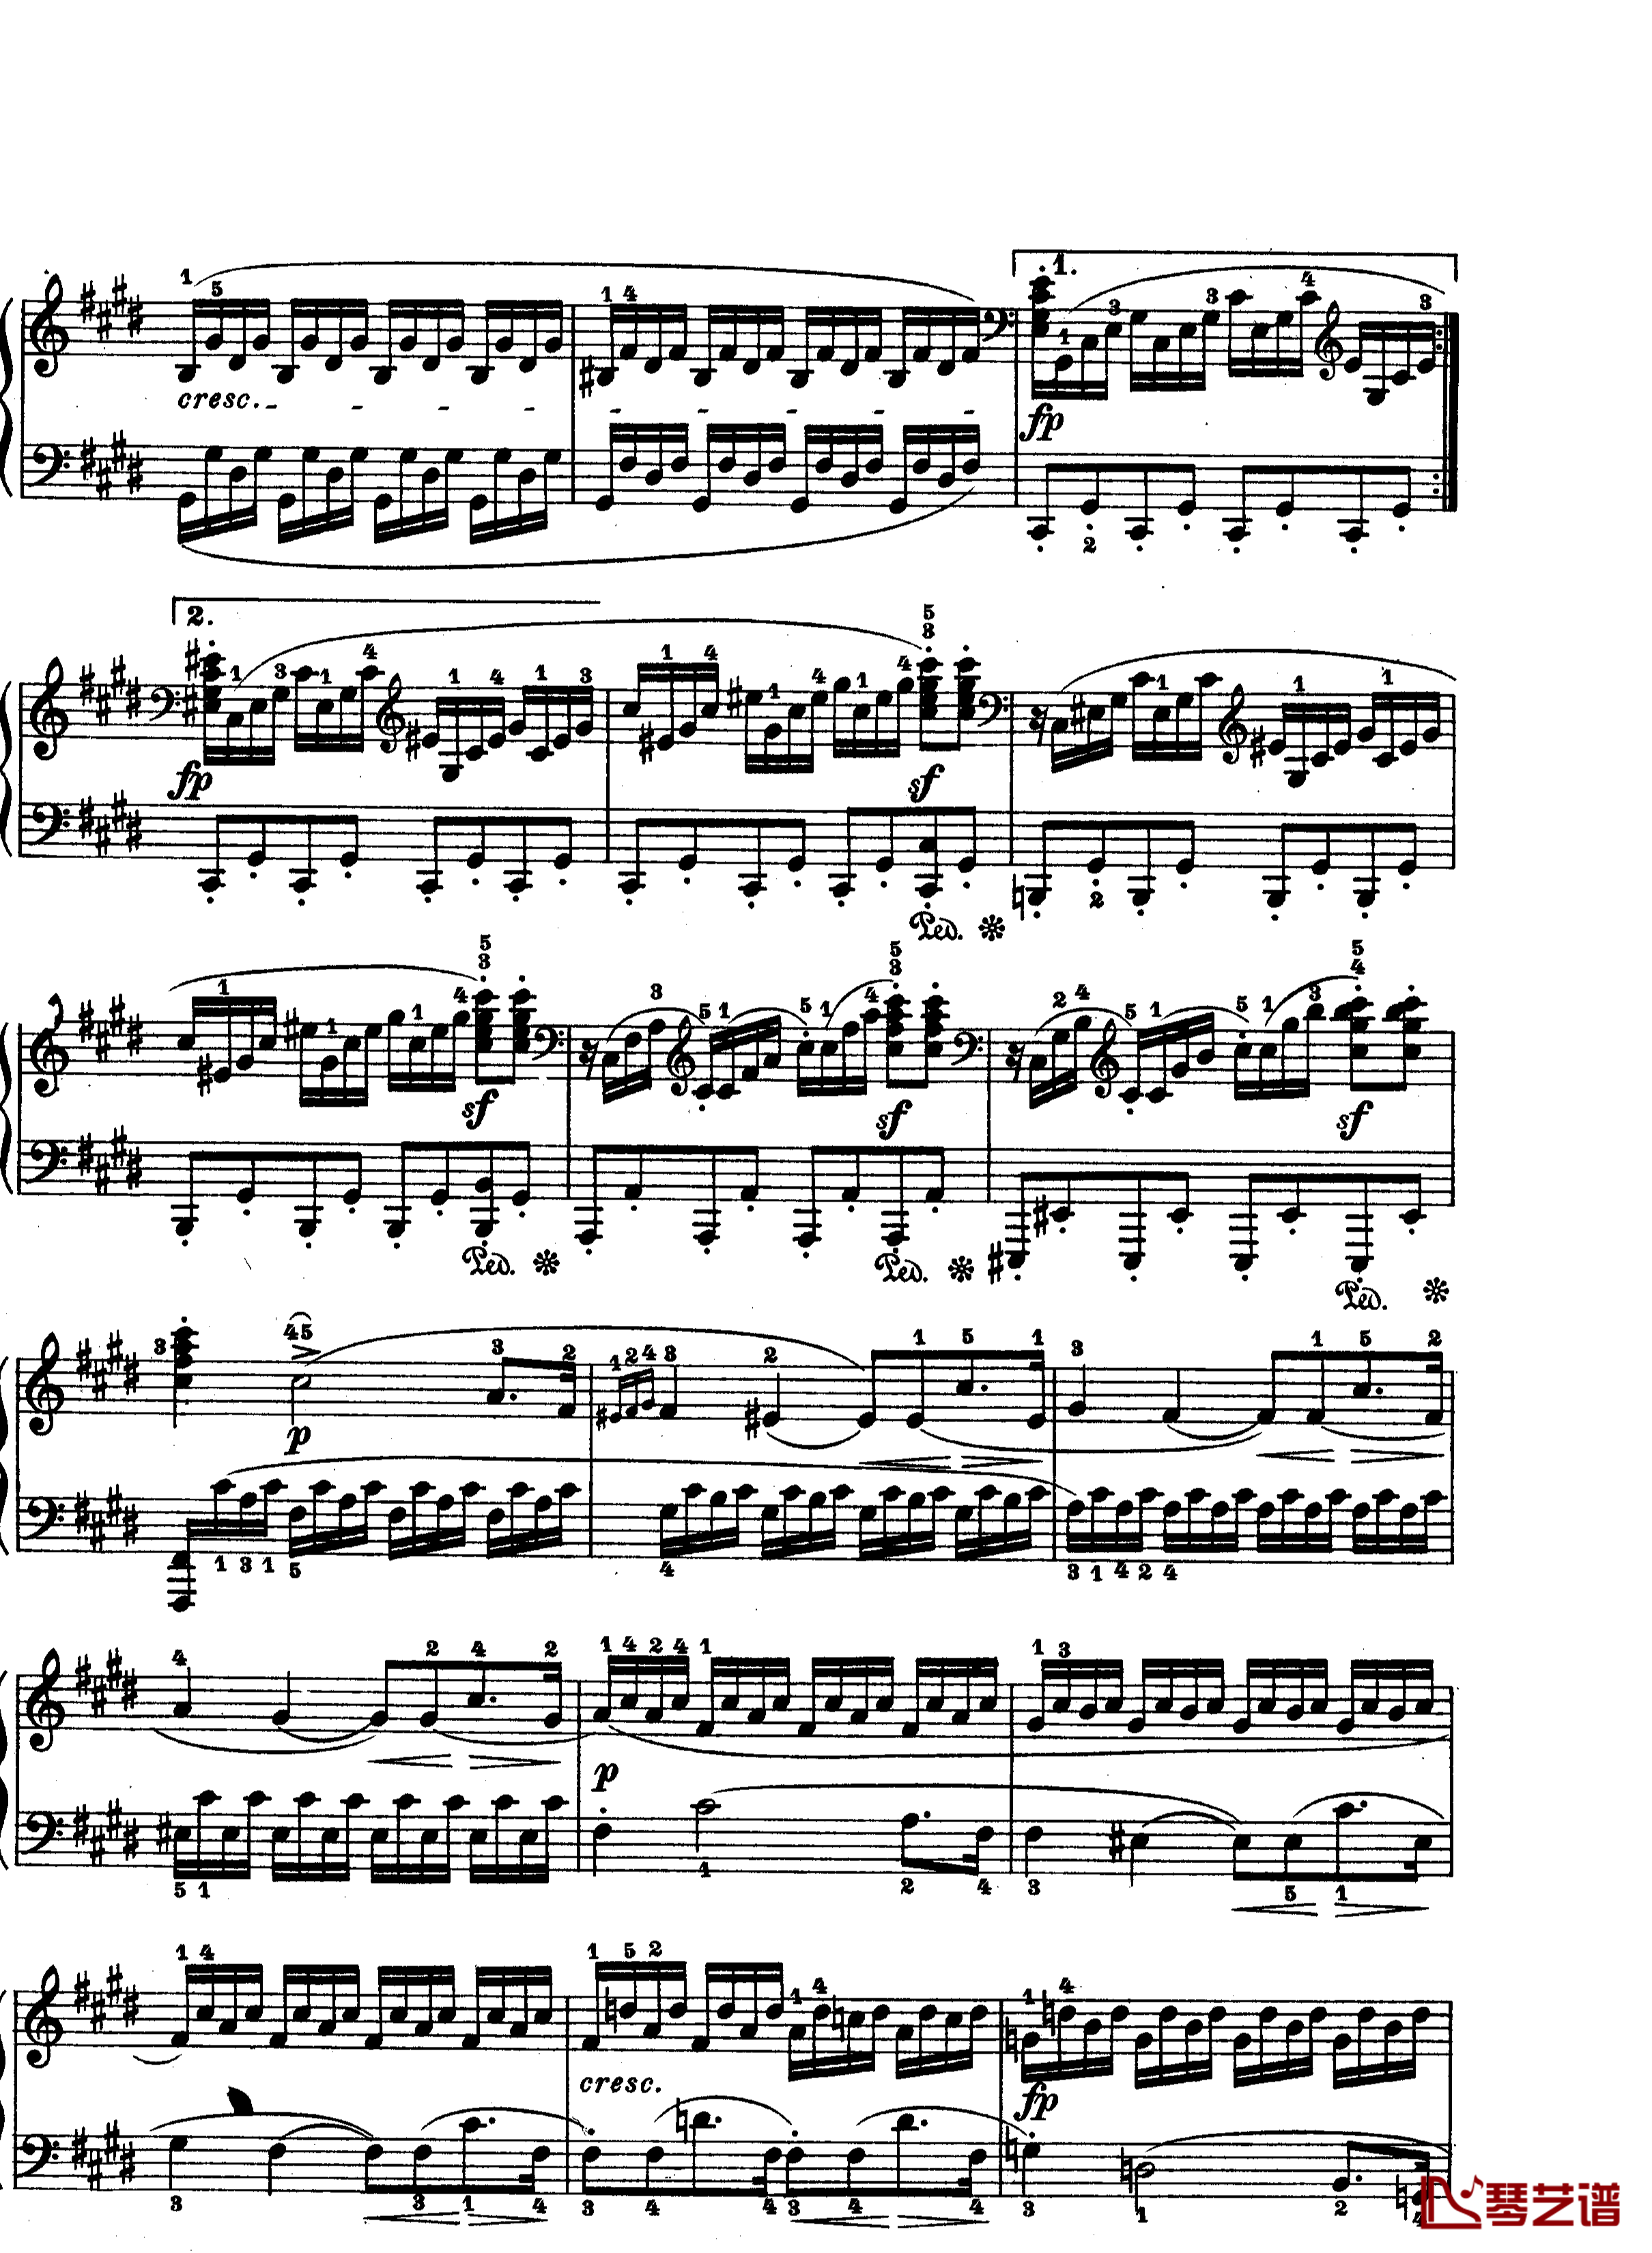 月光曲钢琴谱-第十四钢琴奏鸣曲-Op.27 No.2-贝多芬-beethoven8